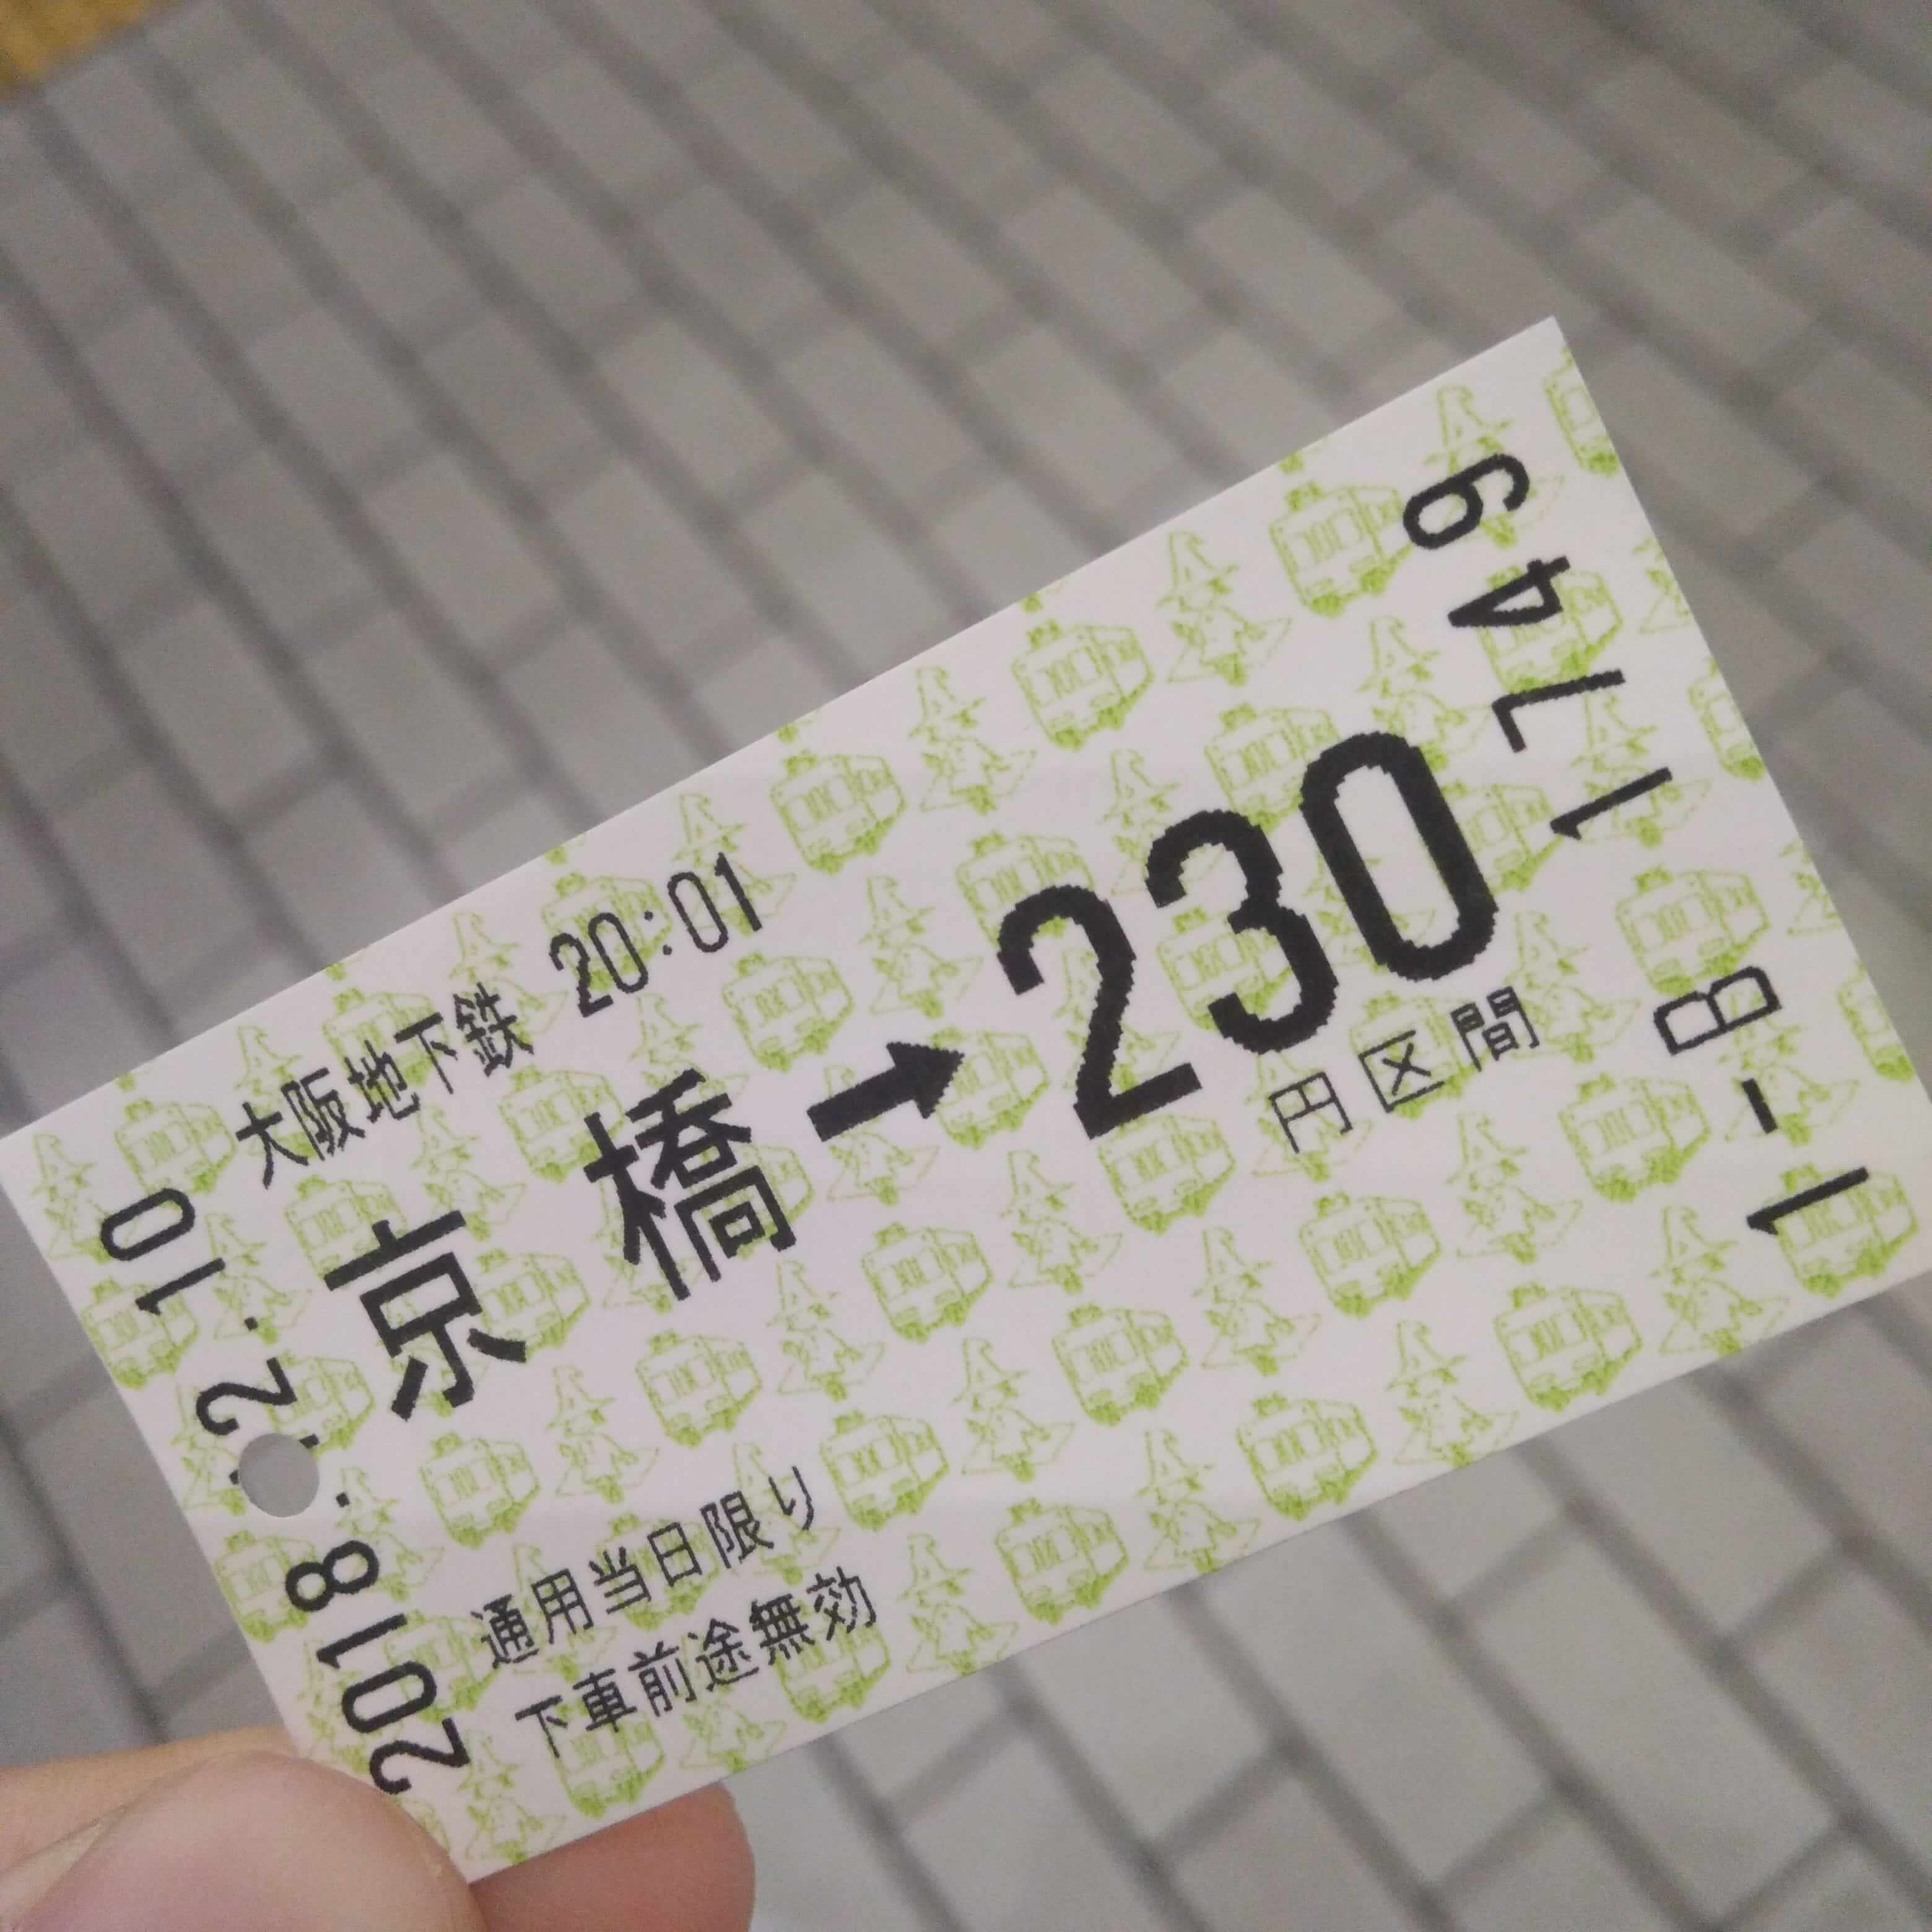 地铁票